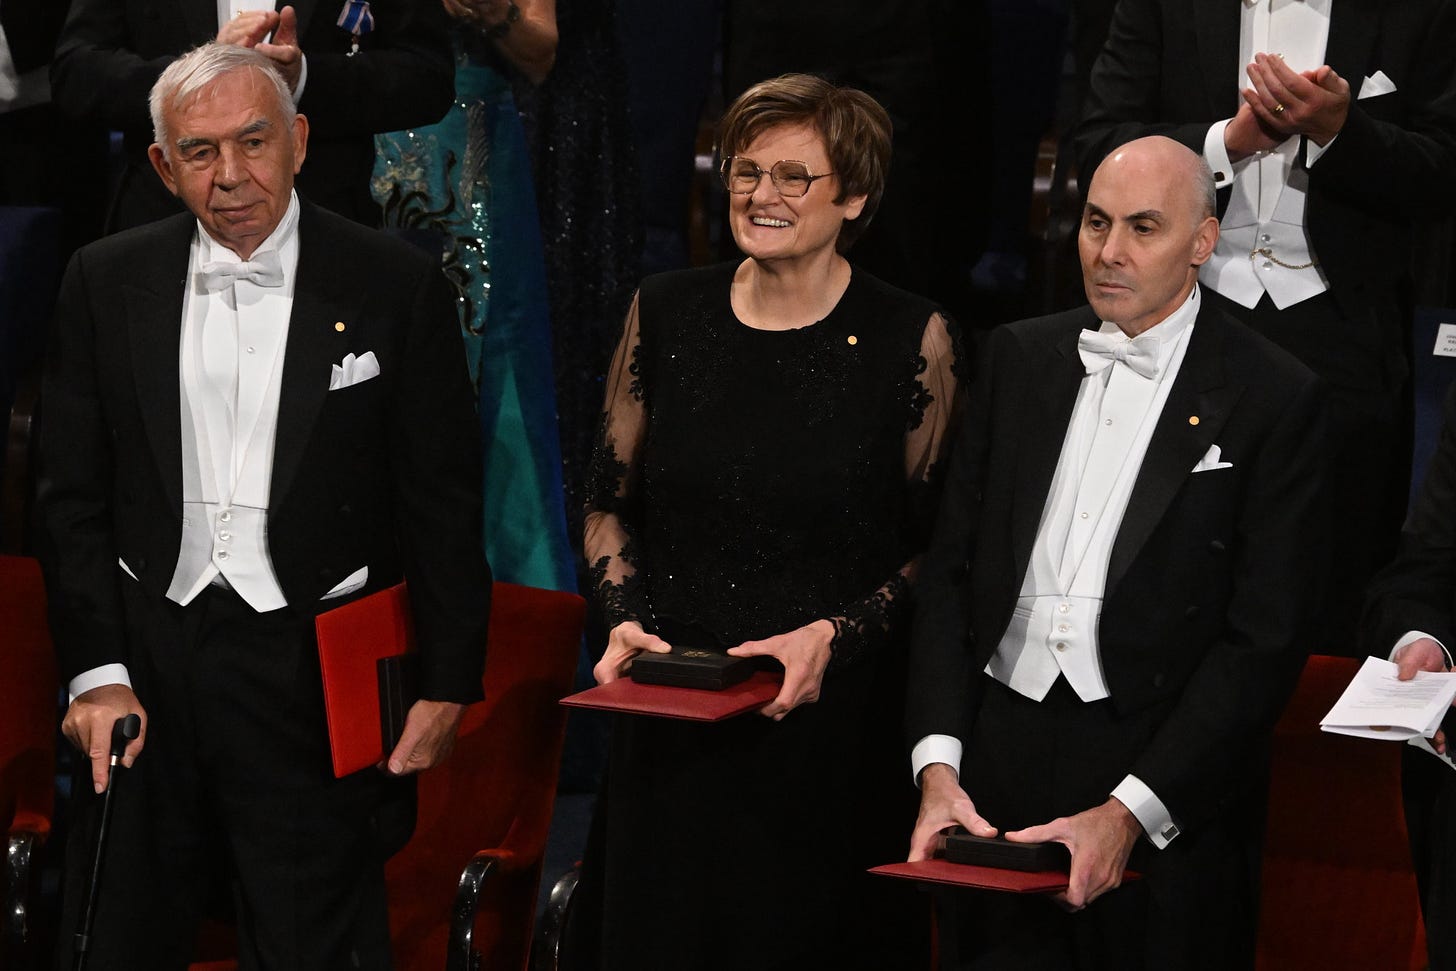 Karikó Katalin biokémikus, miután átvette az orvosi-élettani Nobel-díjat XVI. Károly Gusztáv svéd királytól a 2023-as Nobel-díjak átadási ünnepségén a stockholmi hangversenyteremben 2023. december 10-én.